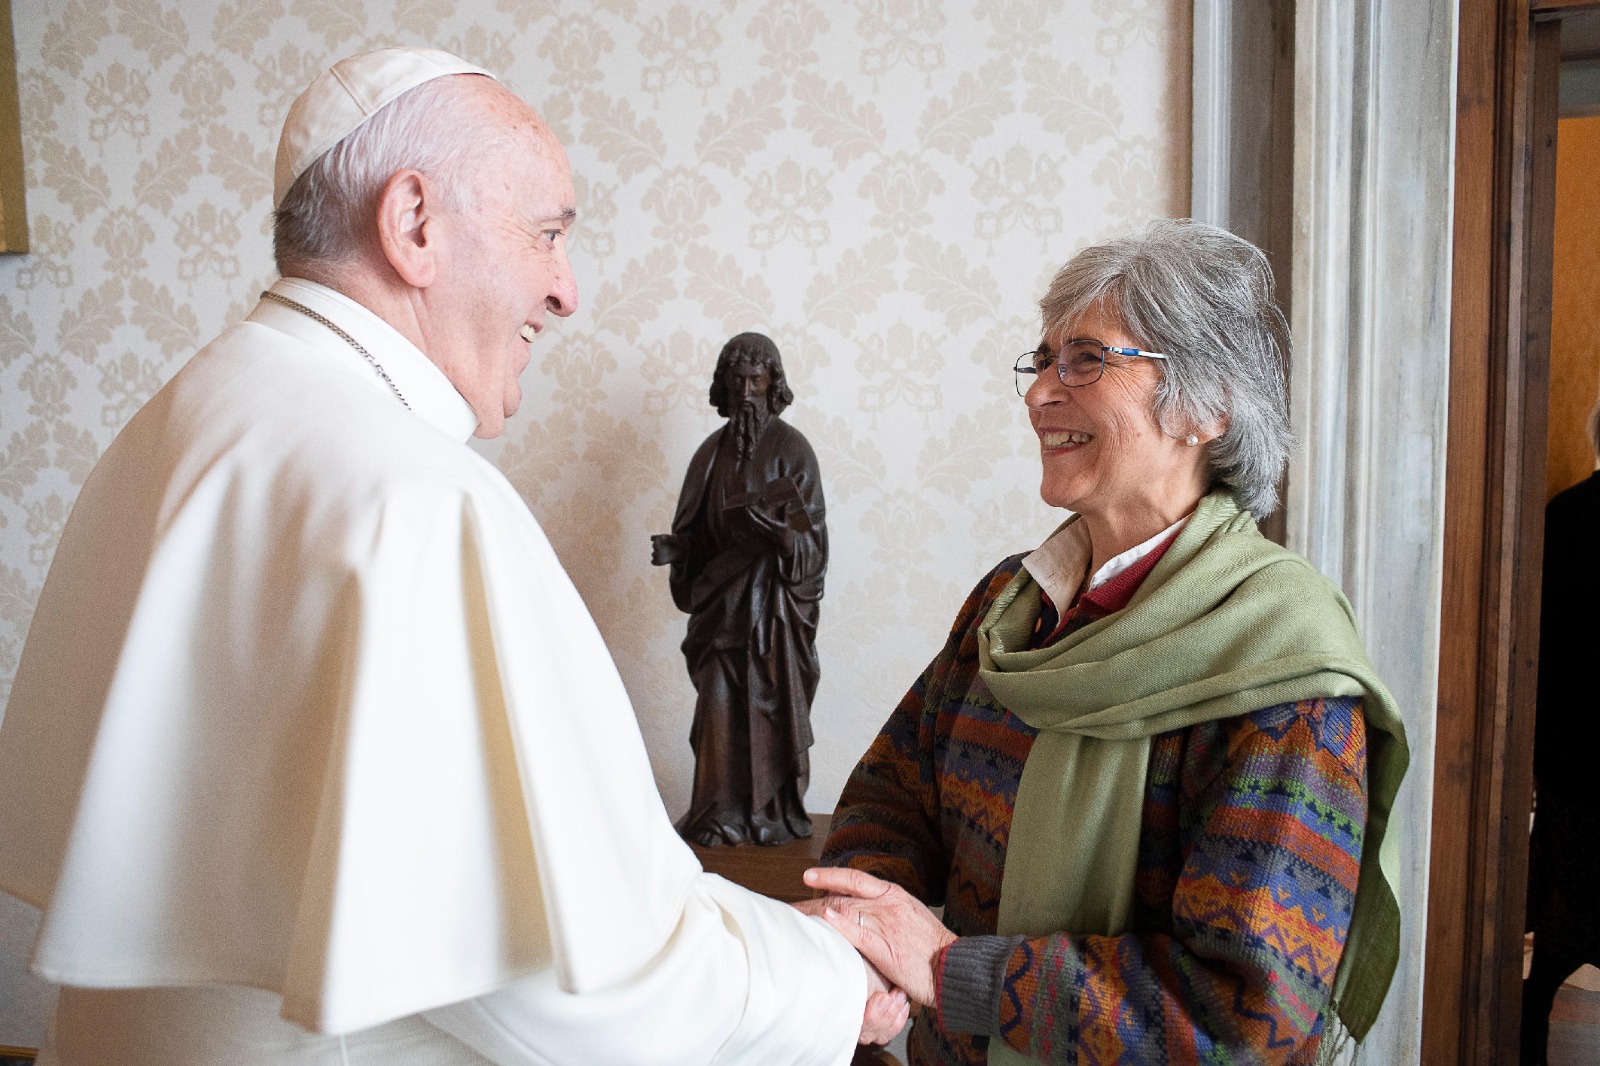 María Lía Zervino meets Pope Francis